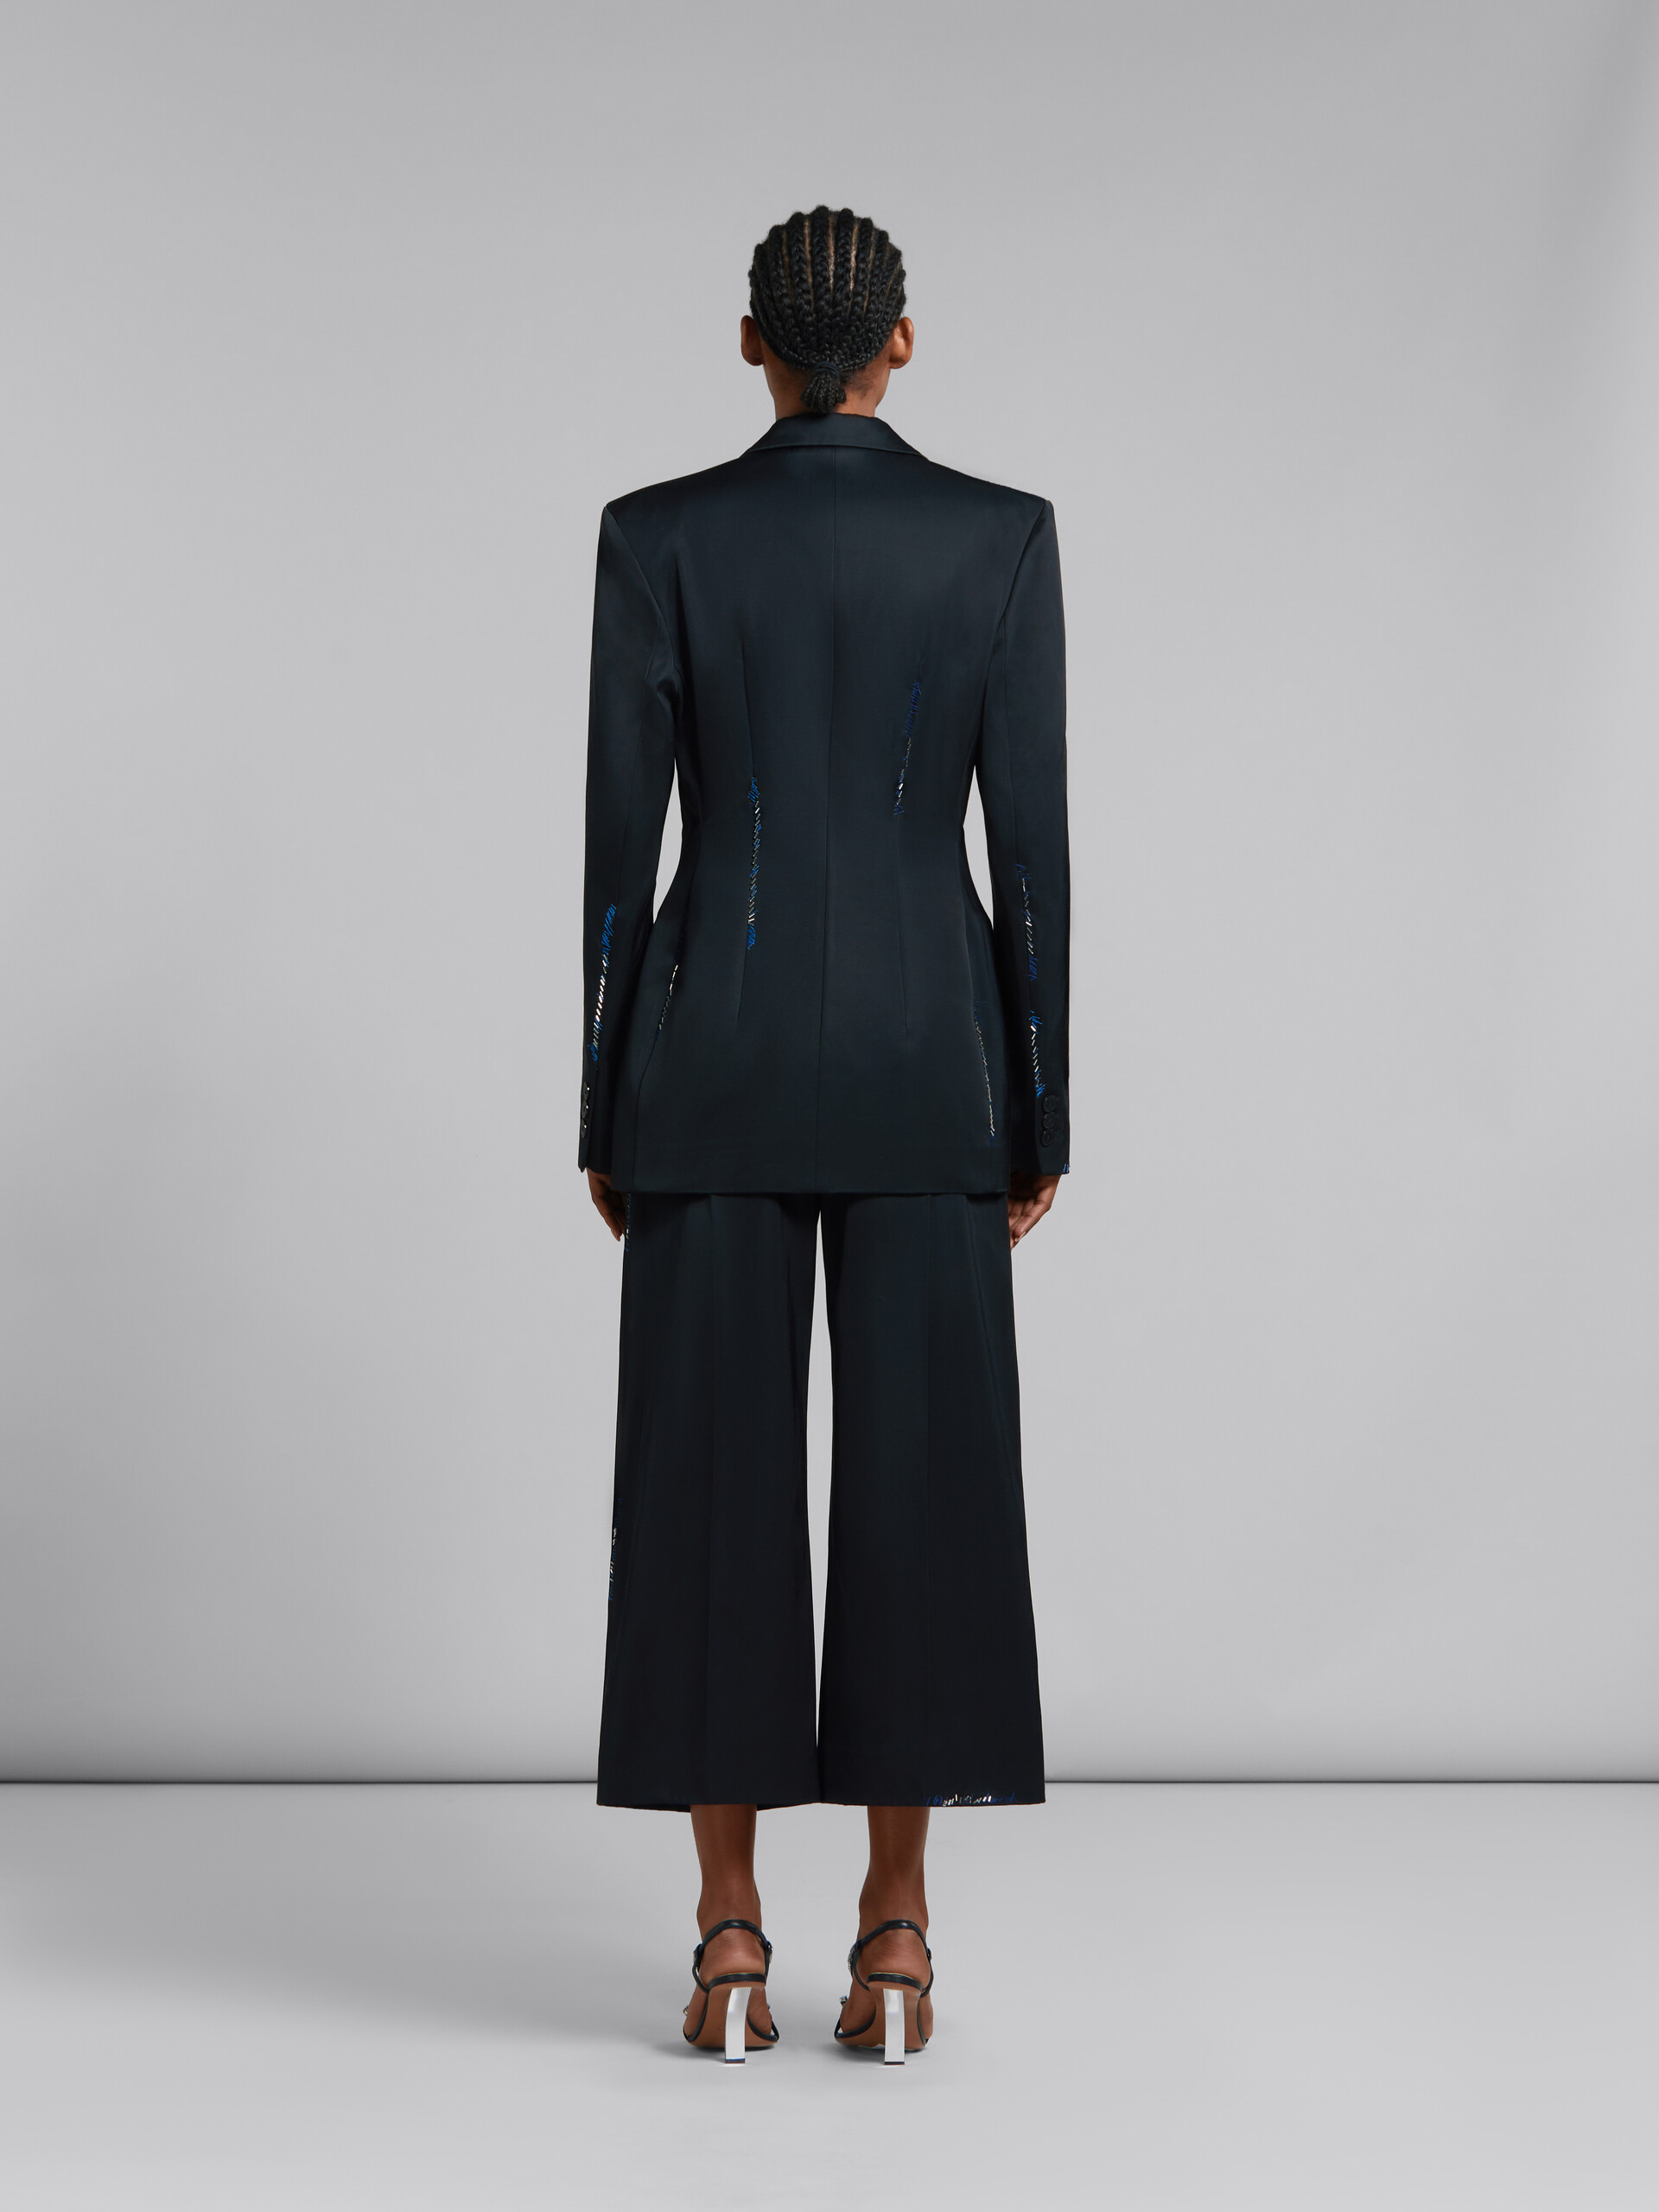 Pantalones negros de satén duquesa con cuentas efecto remiendo - Pantalones - Image 3